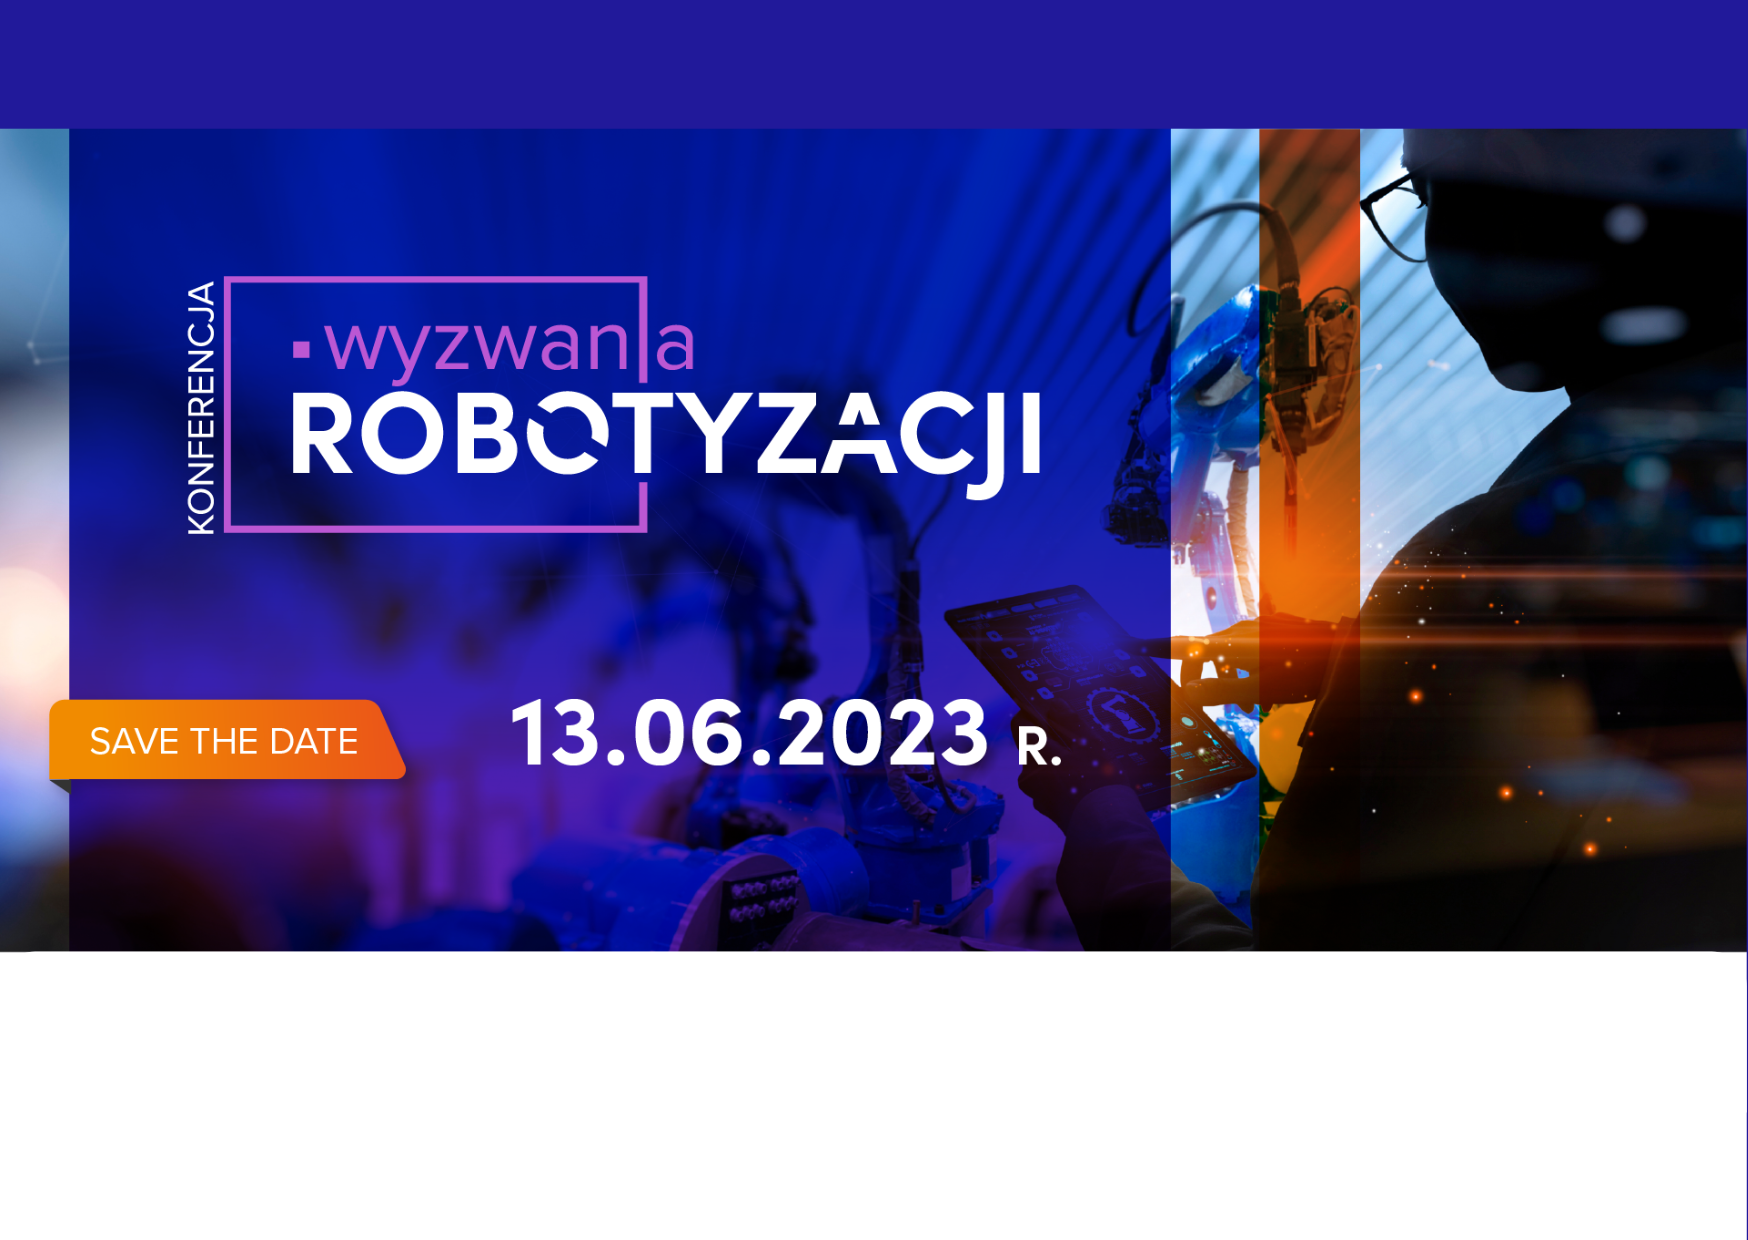 Jak zautomatyzować procesy produkcyjne w firmie? Wyzwania robotyzacji – konferencja 13.06.2023r.